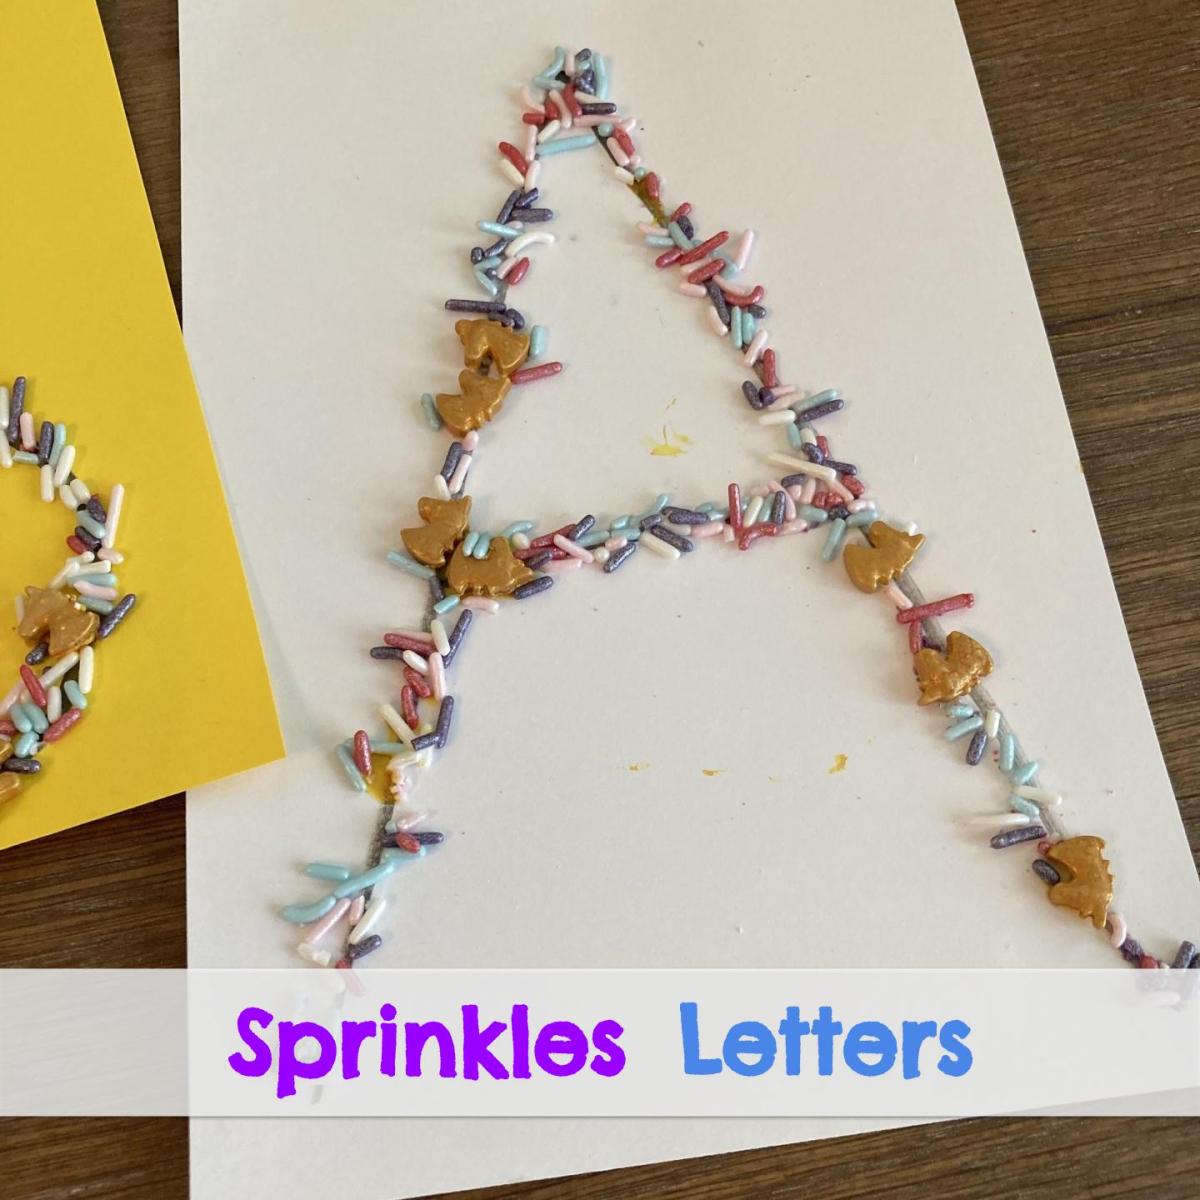 Sprinkles Letters!